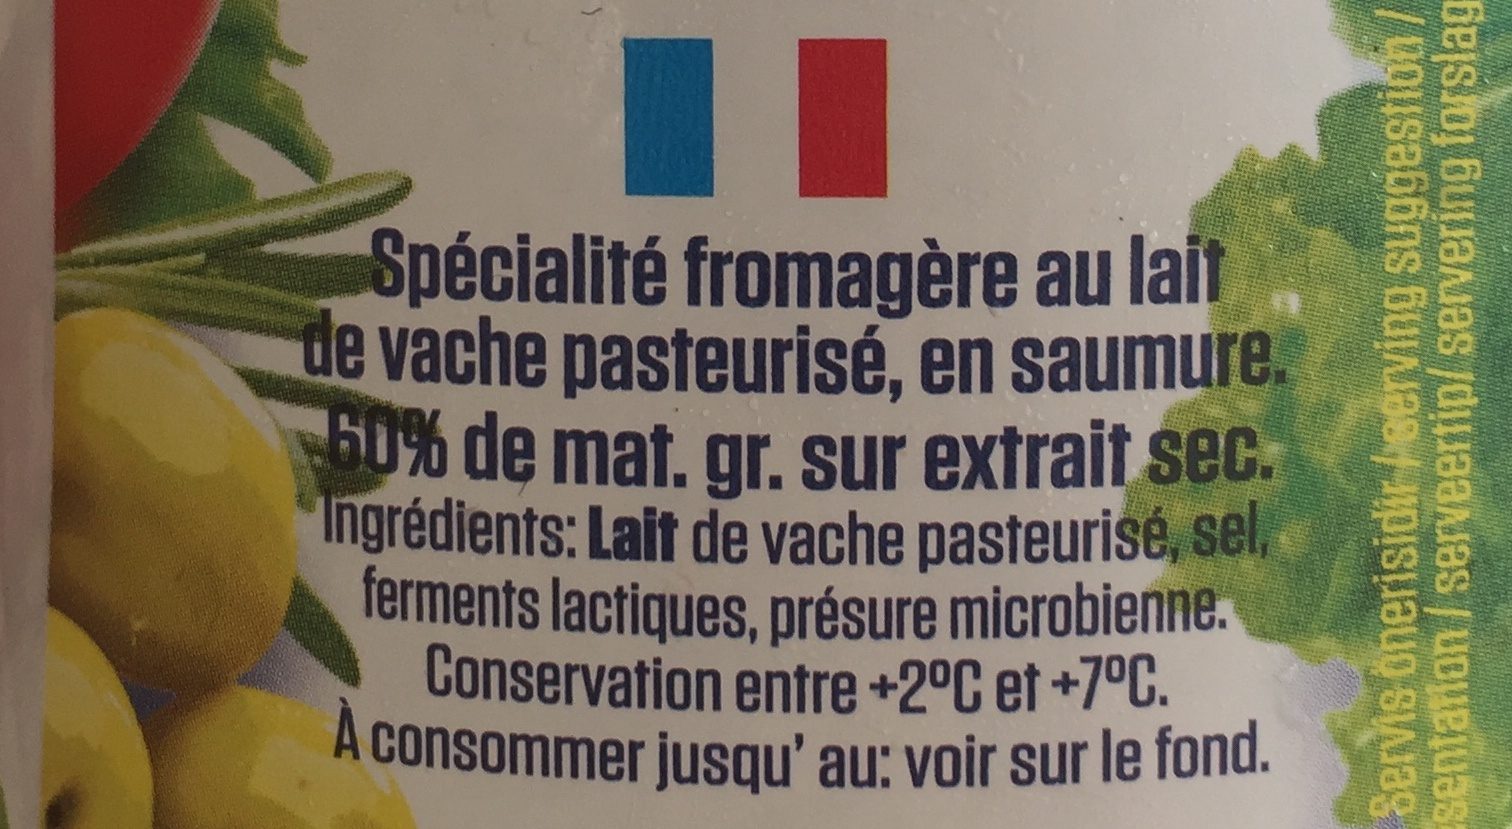 Baktat beyaz peynir - Ingredients - fr